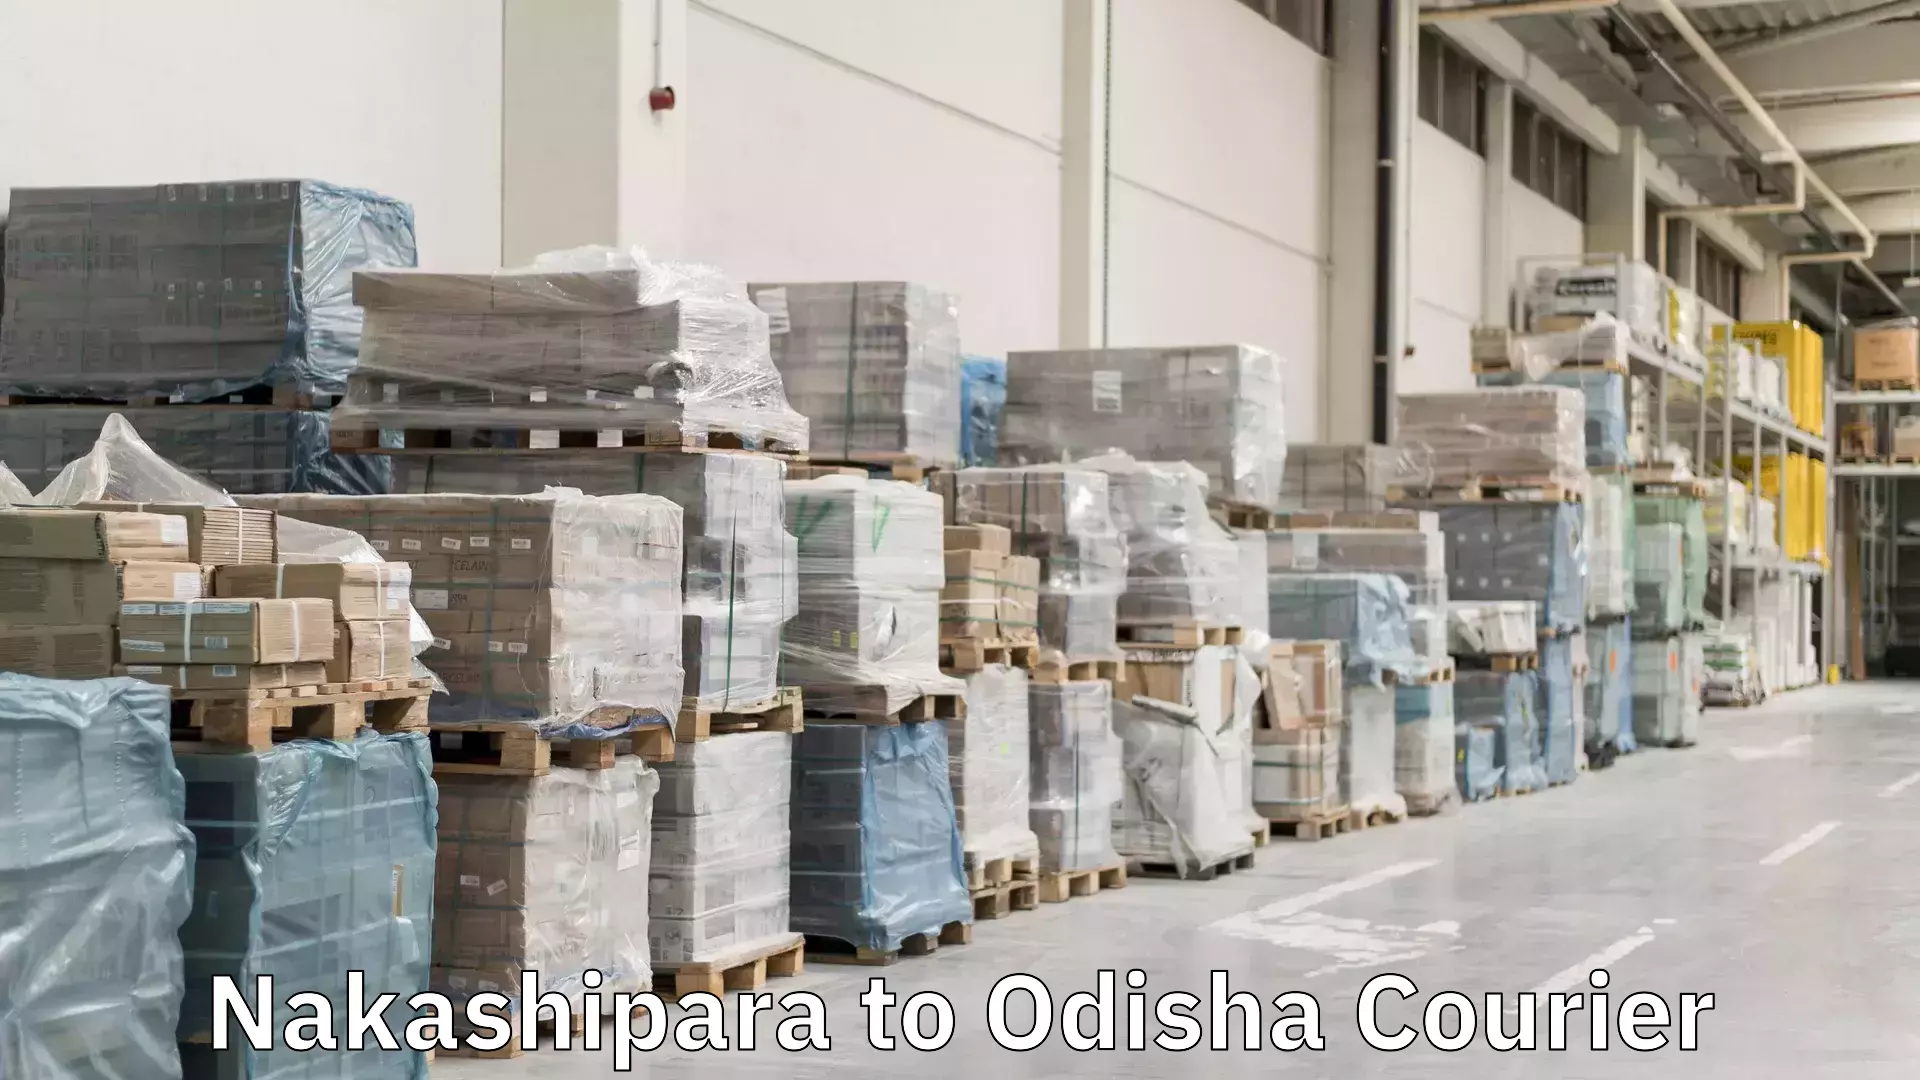 Efficient shipping operations Nakashipara to Betnoti